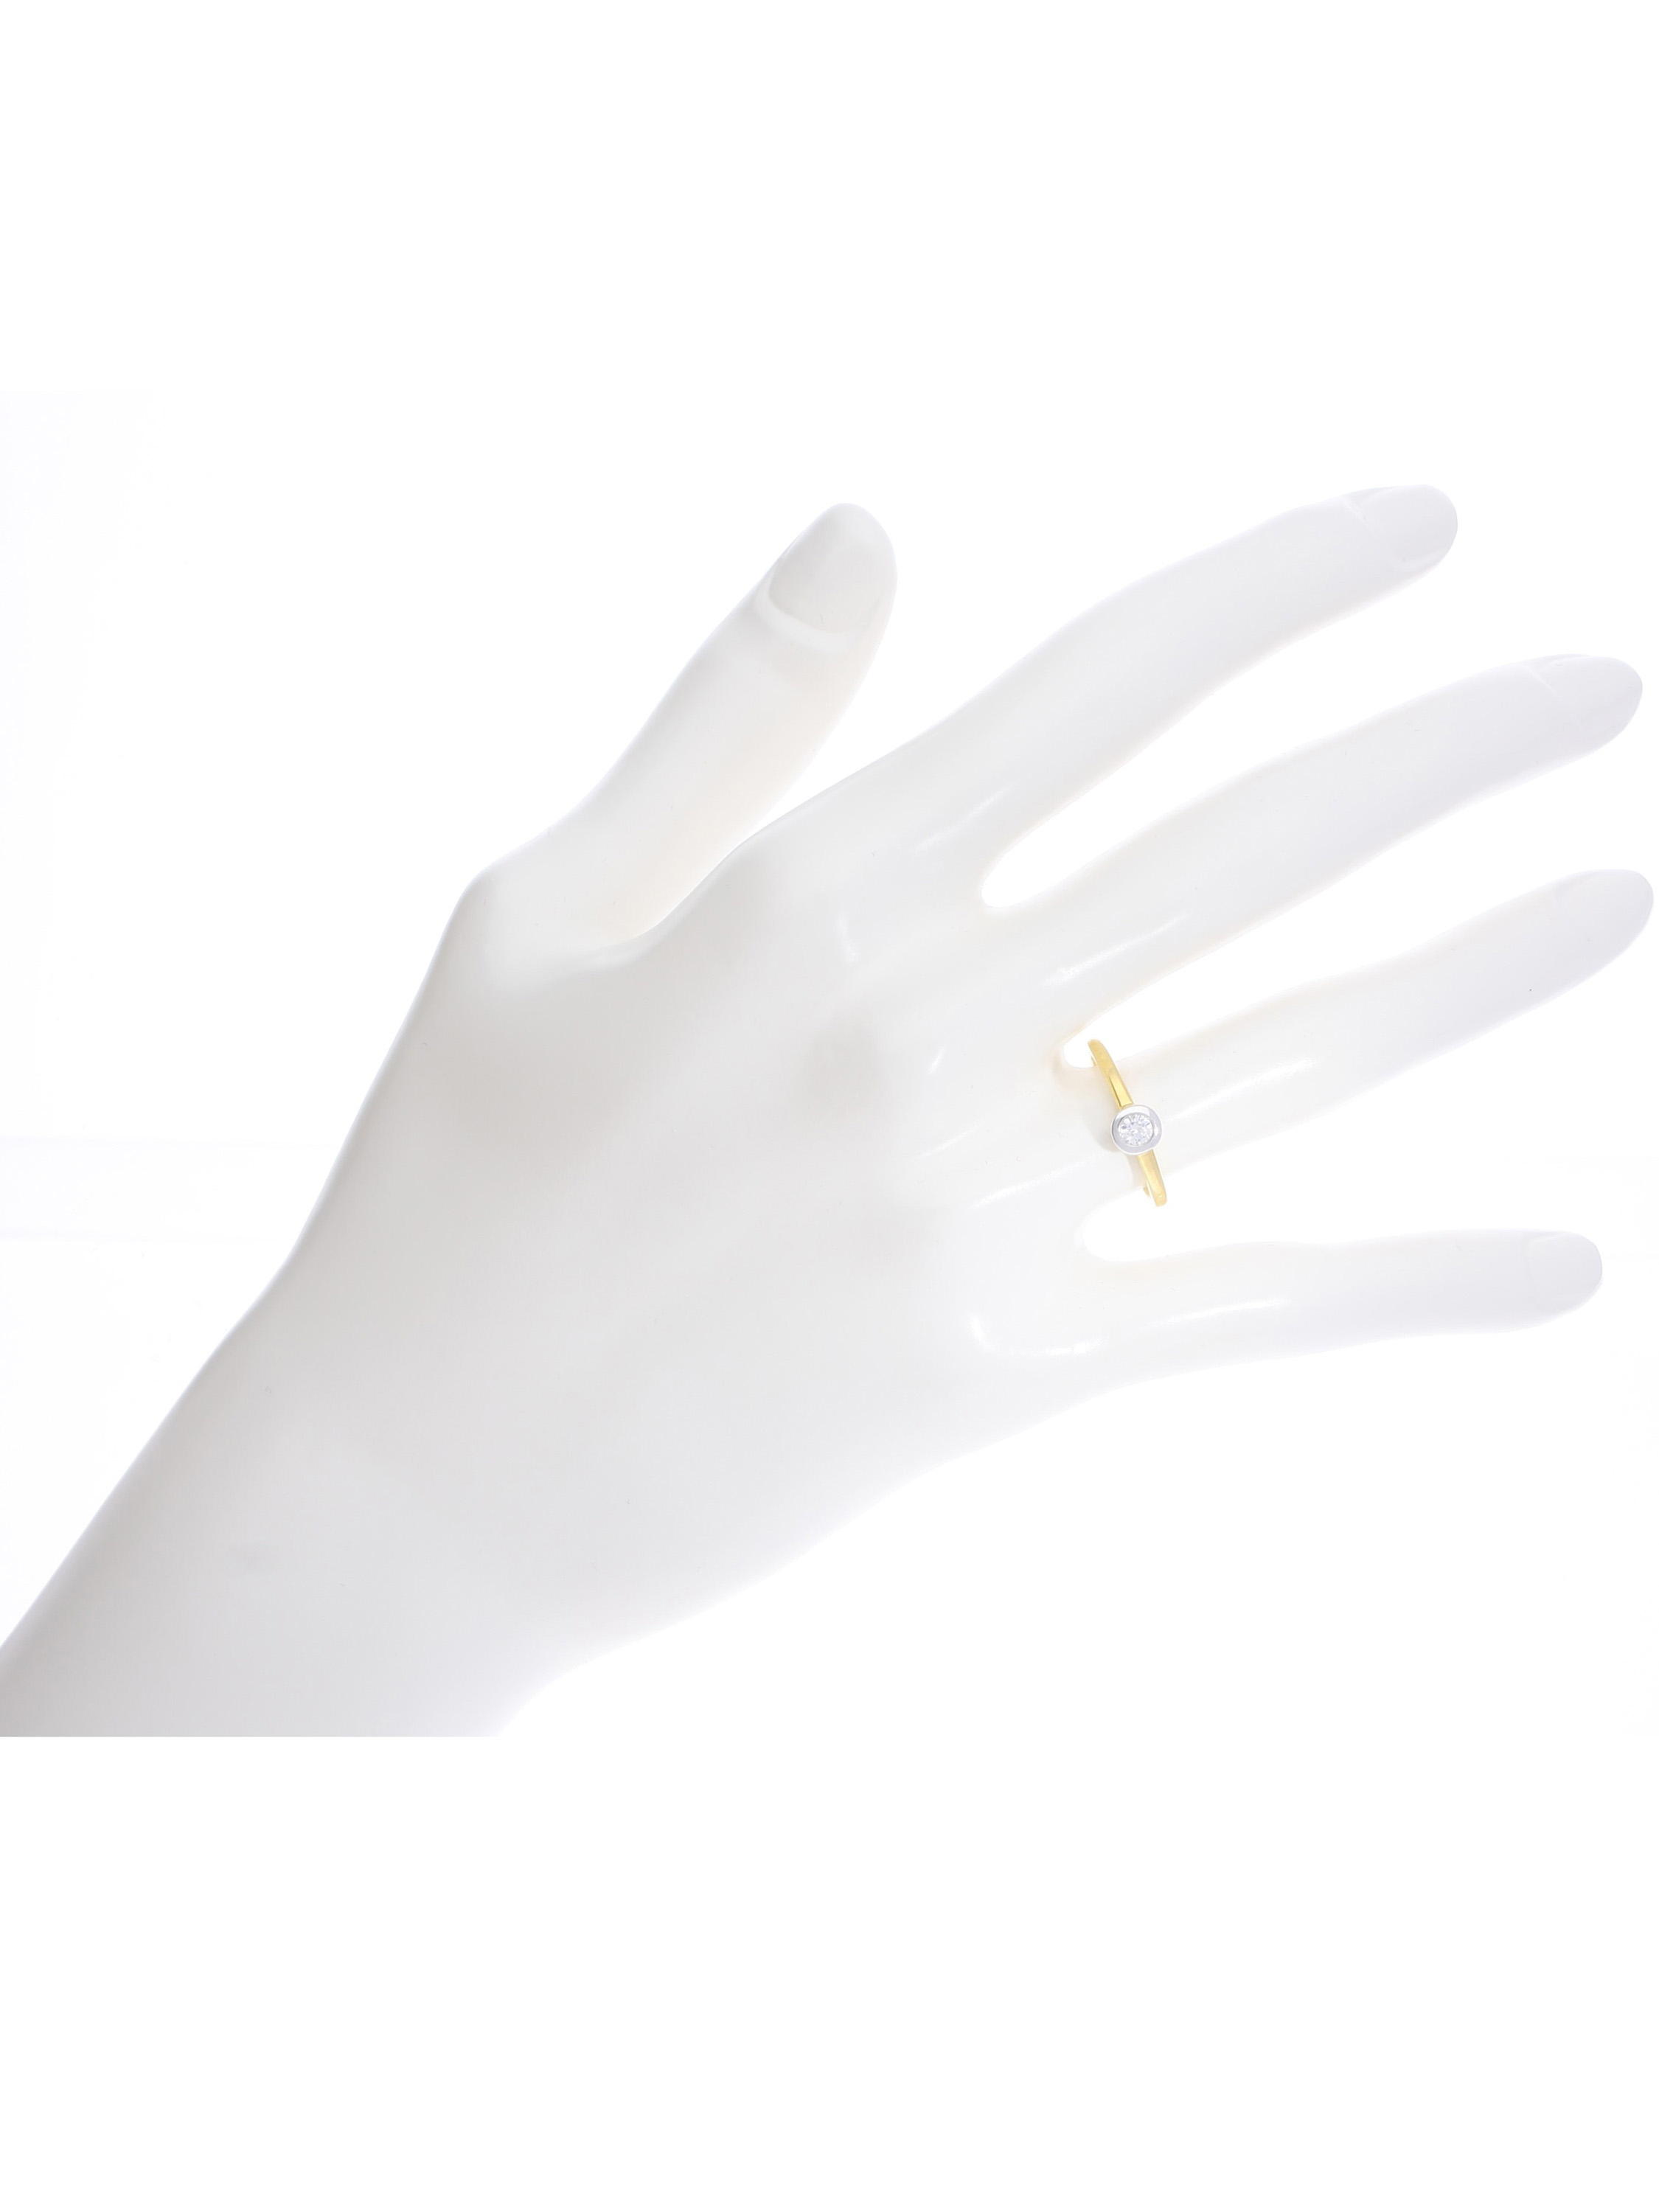 Damenring aus echtem Gelbgold mit weißem Zirkonia - Gamma | Büstenansicht